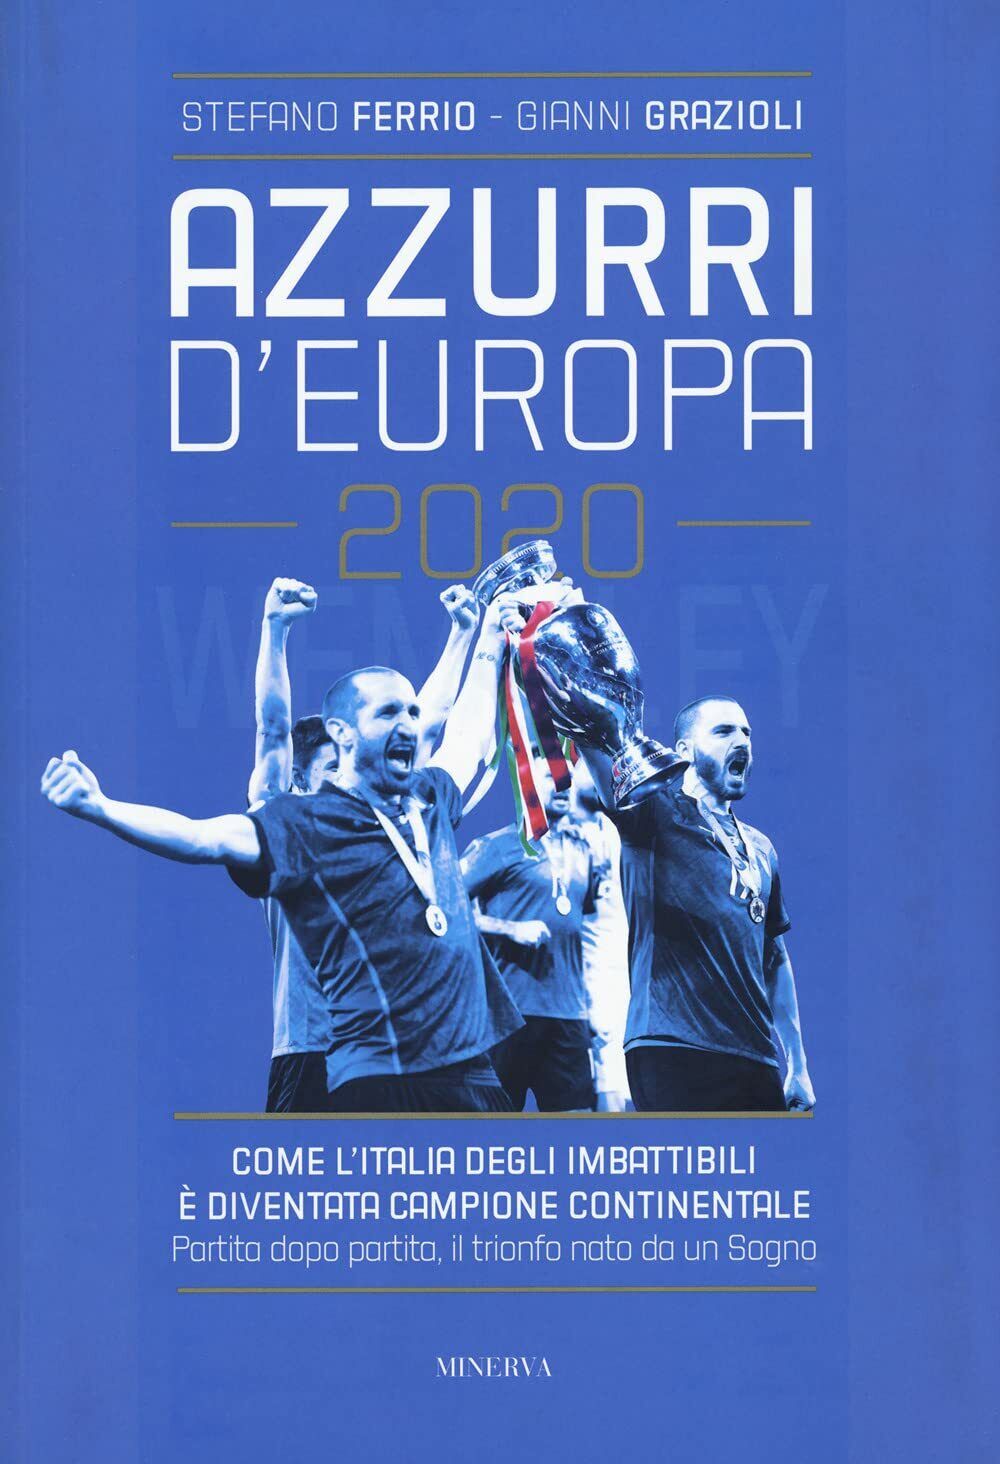 Azzurri d'Europa 2020 - Stefano Ferrio, Gianni Grazioli - Minerva, 2021